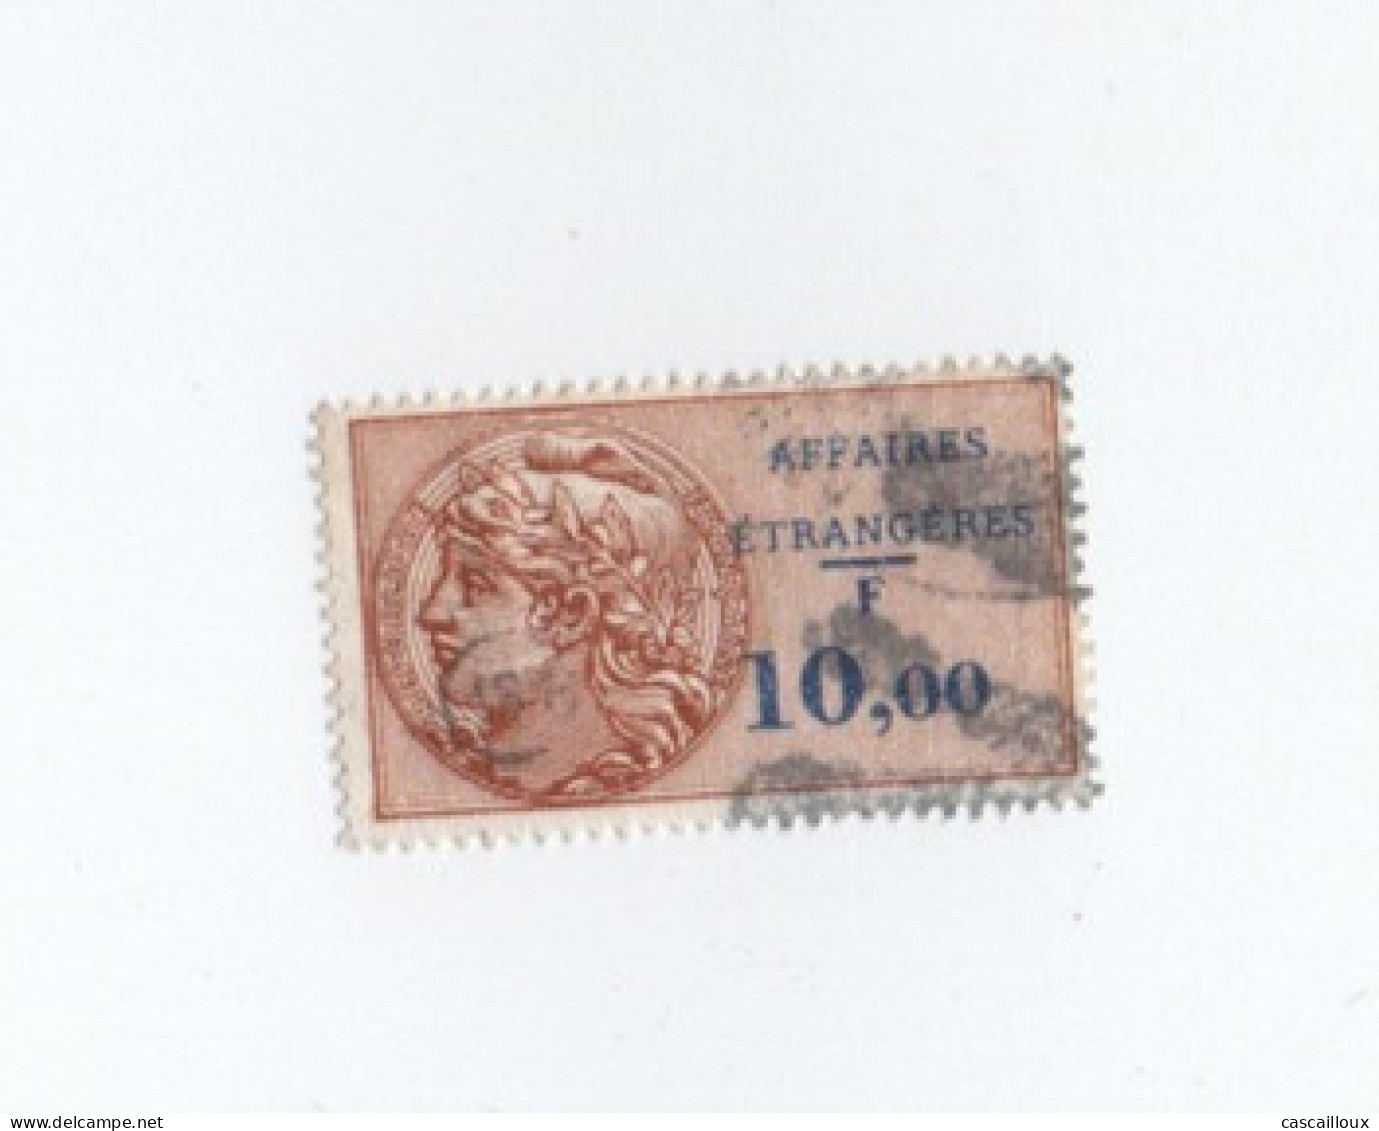 Affaire étrangère - Stamps